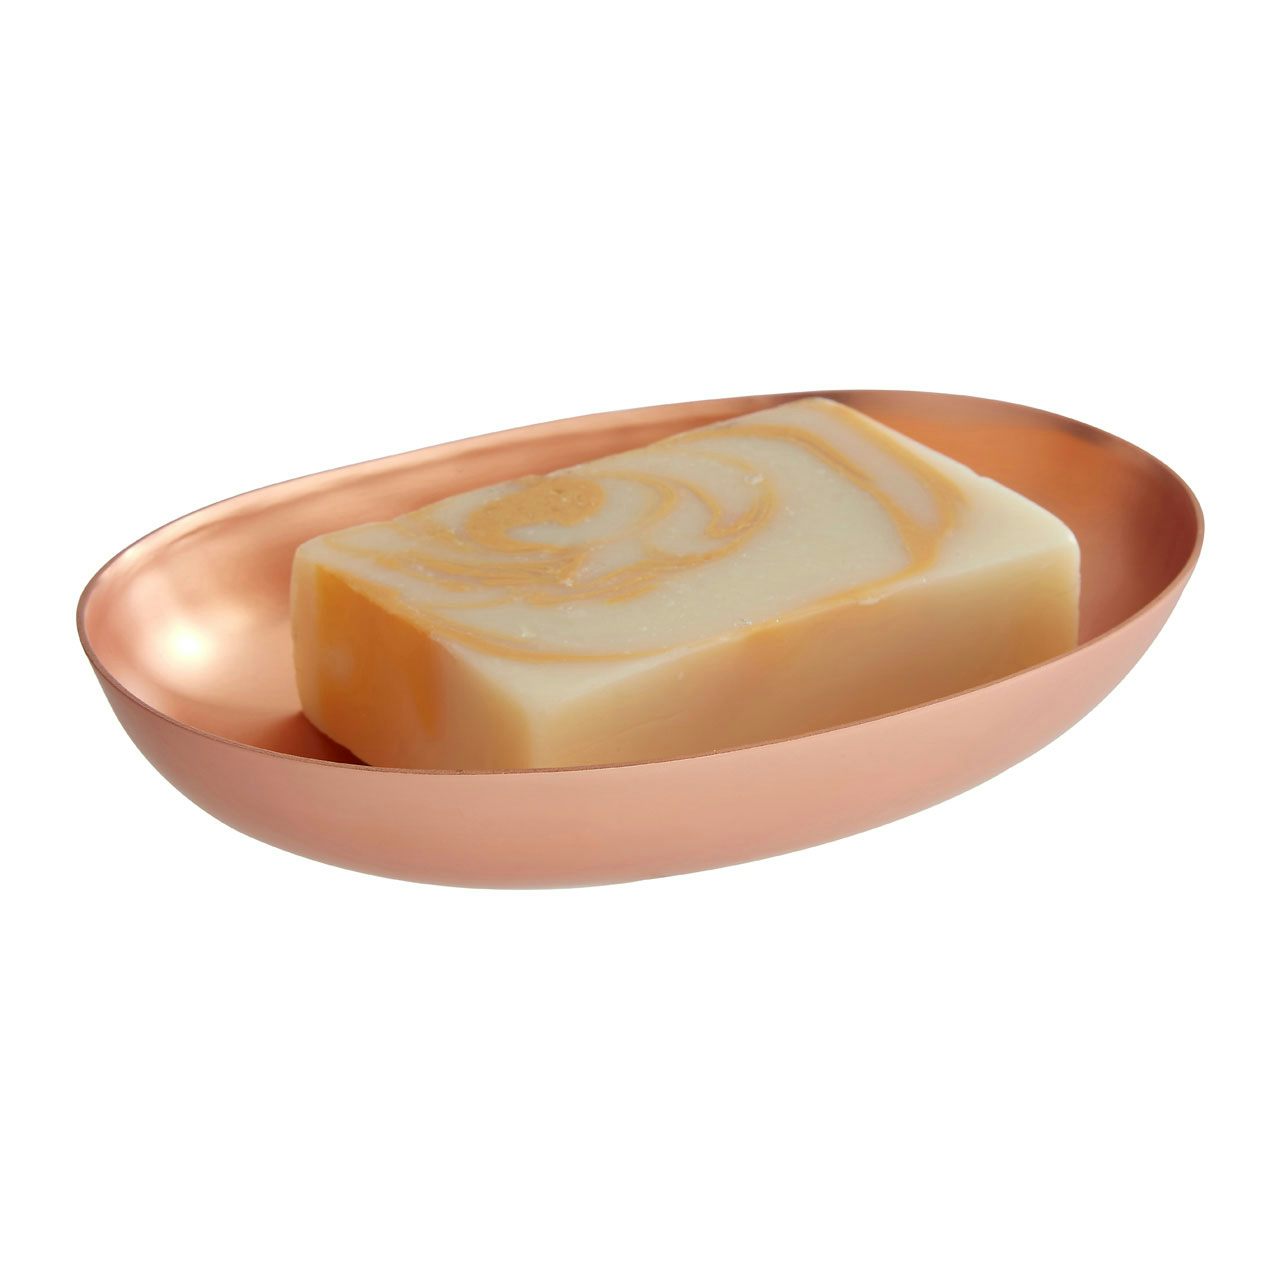 Accents Madison shine copper finish soap dish